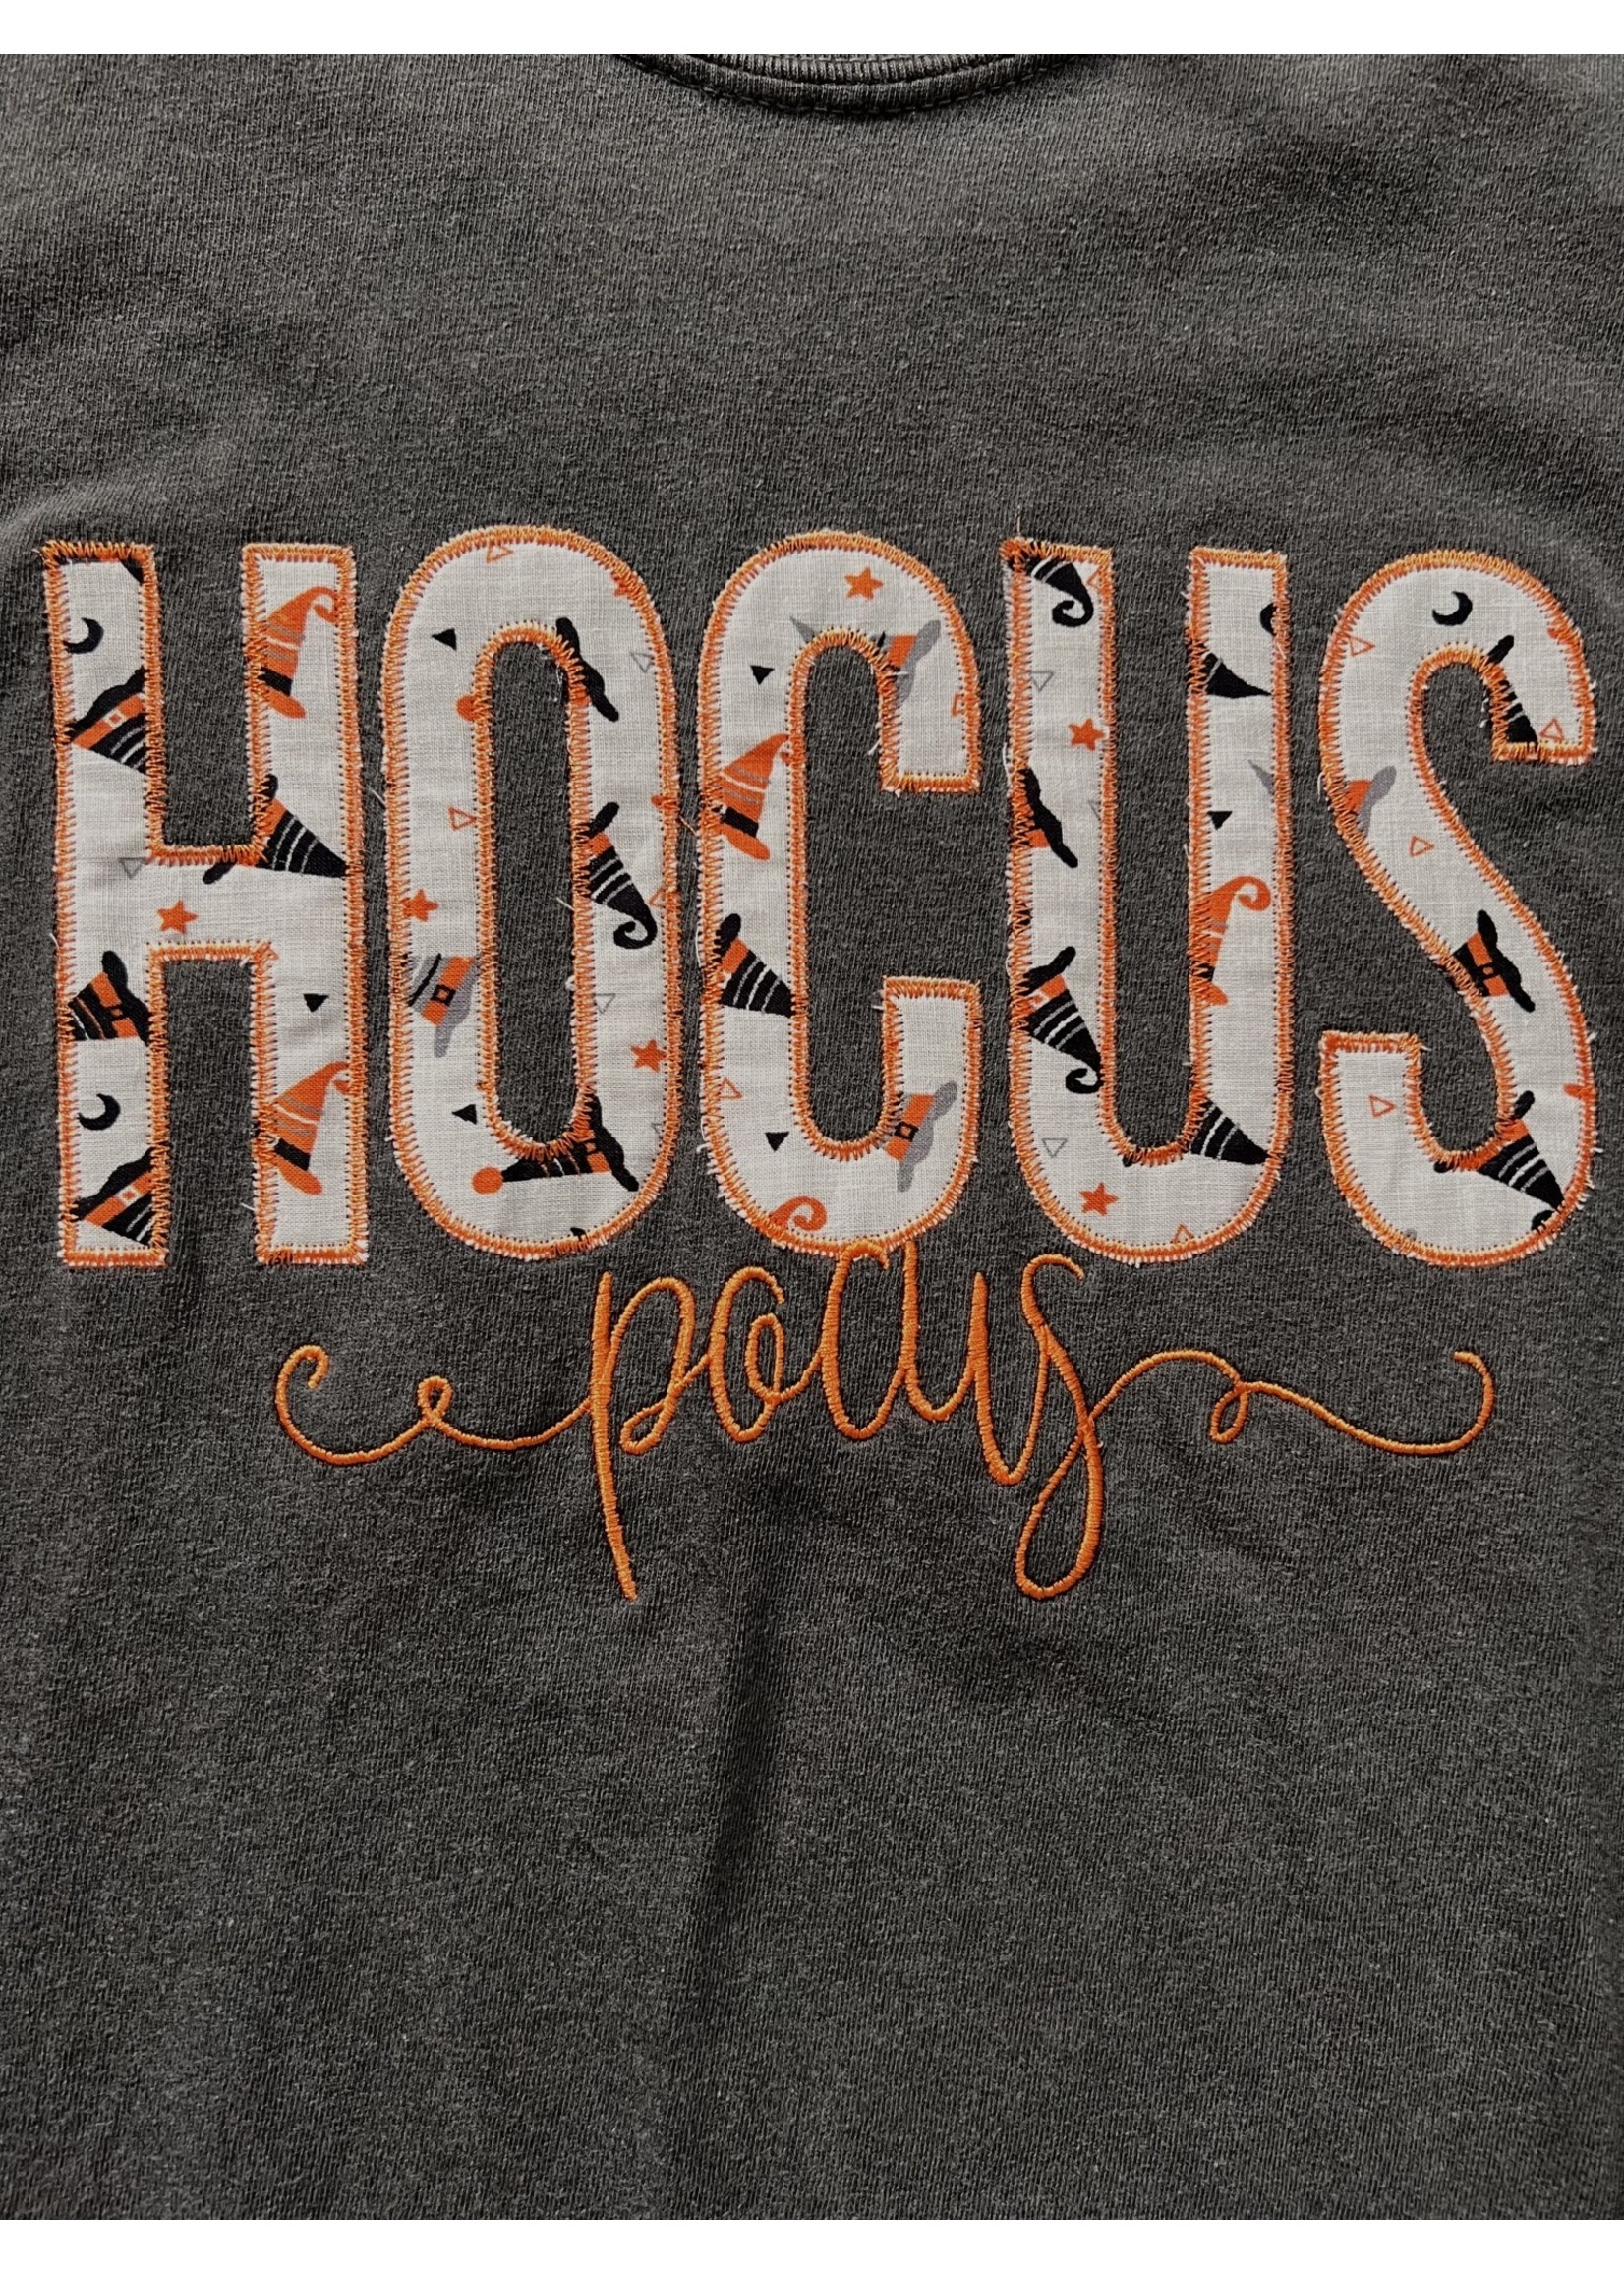 Hocus Pocus Graphic